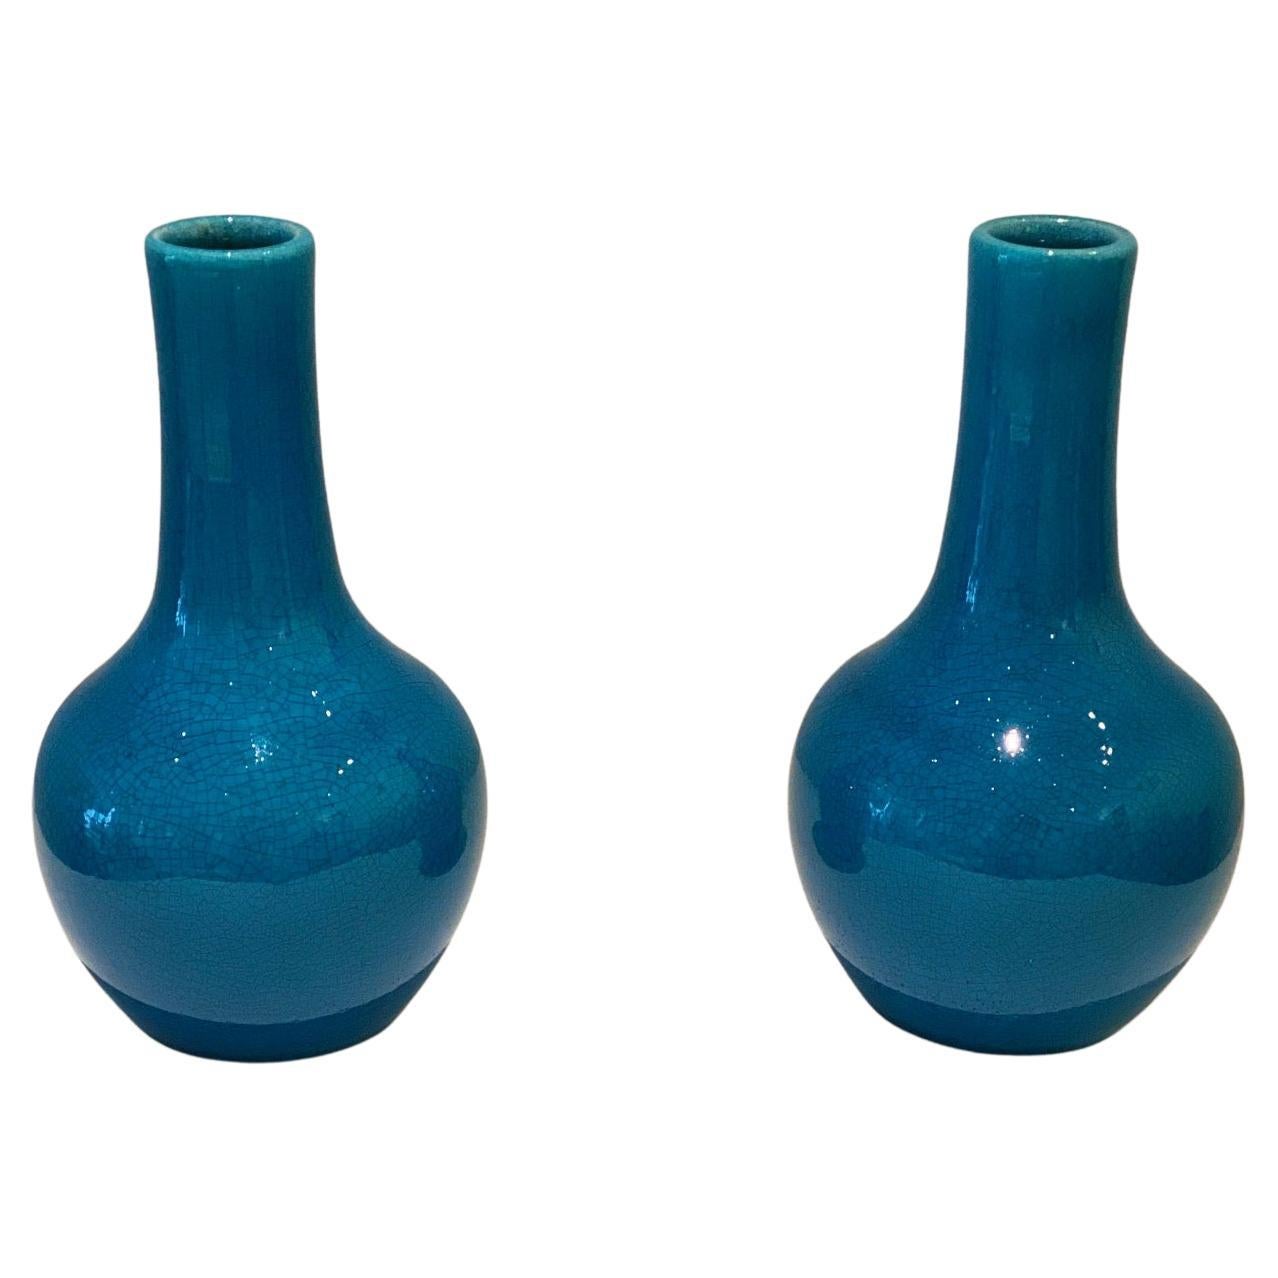 Kleine Vasen aus blauer Keramik von Pol Chambost, 1970er Jahre, Paar